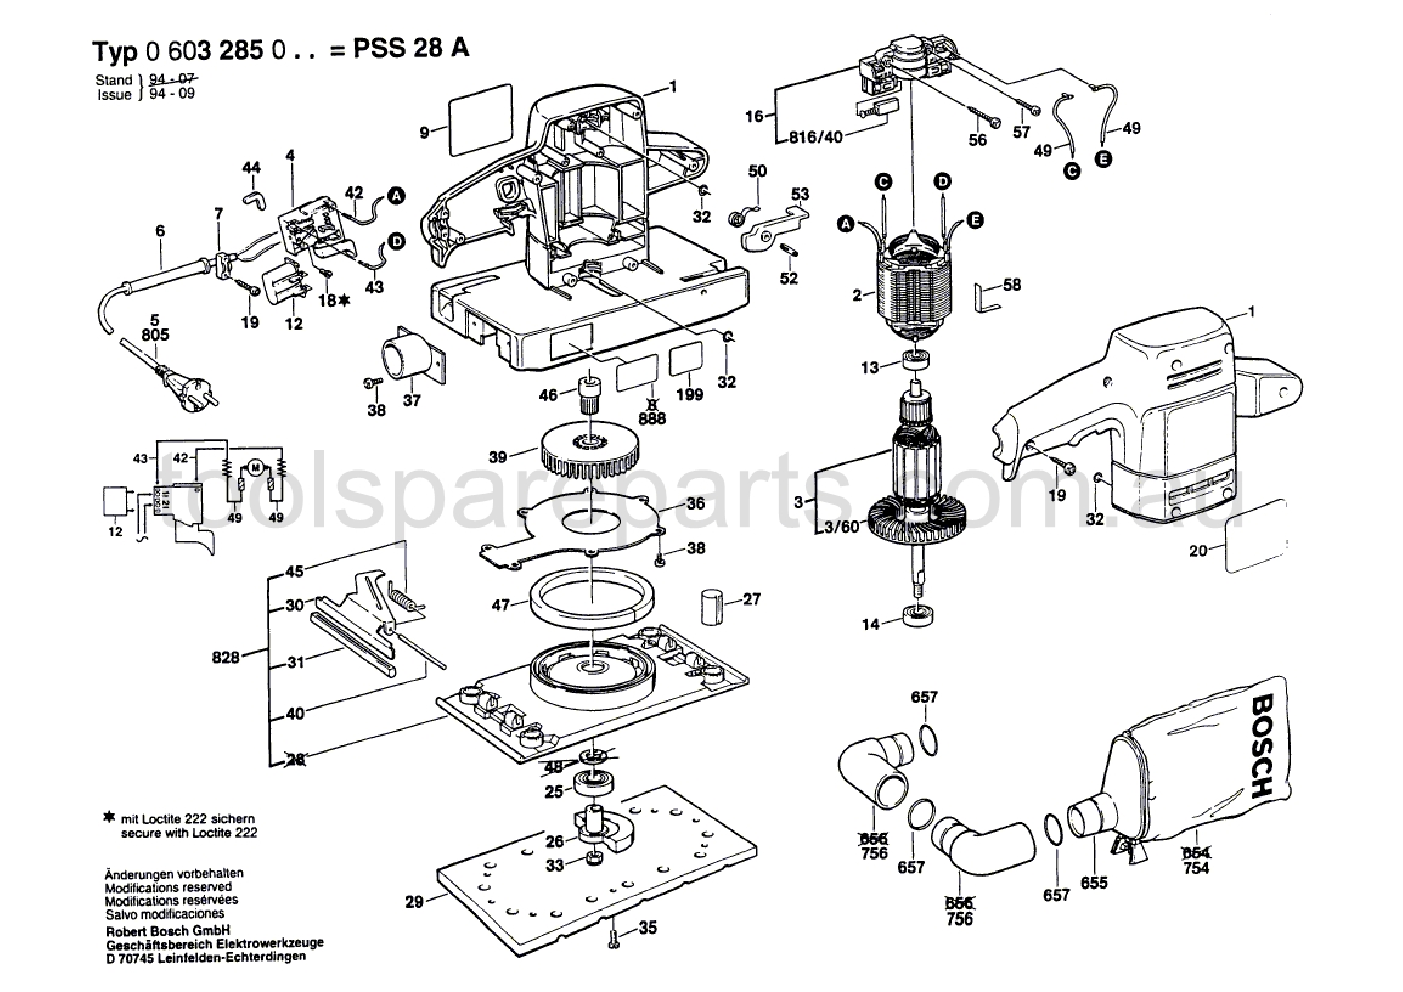 Bosch PSS 28 A 0603285037  Diagram 1